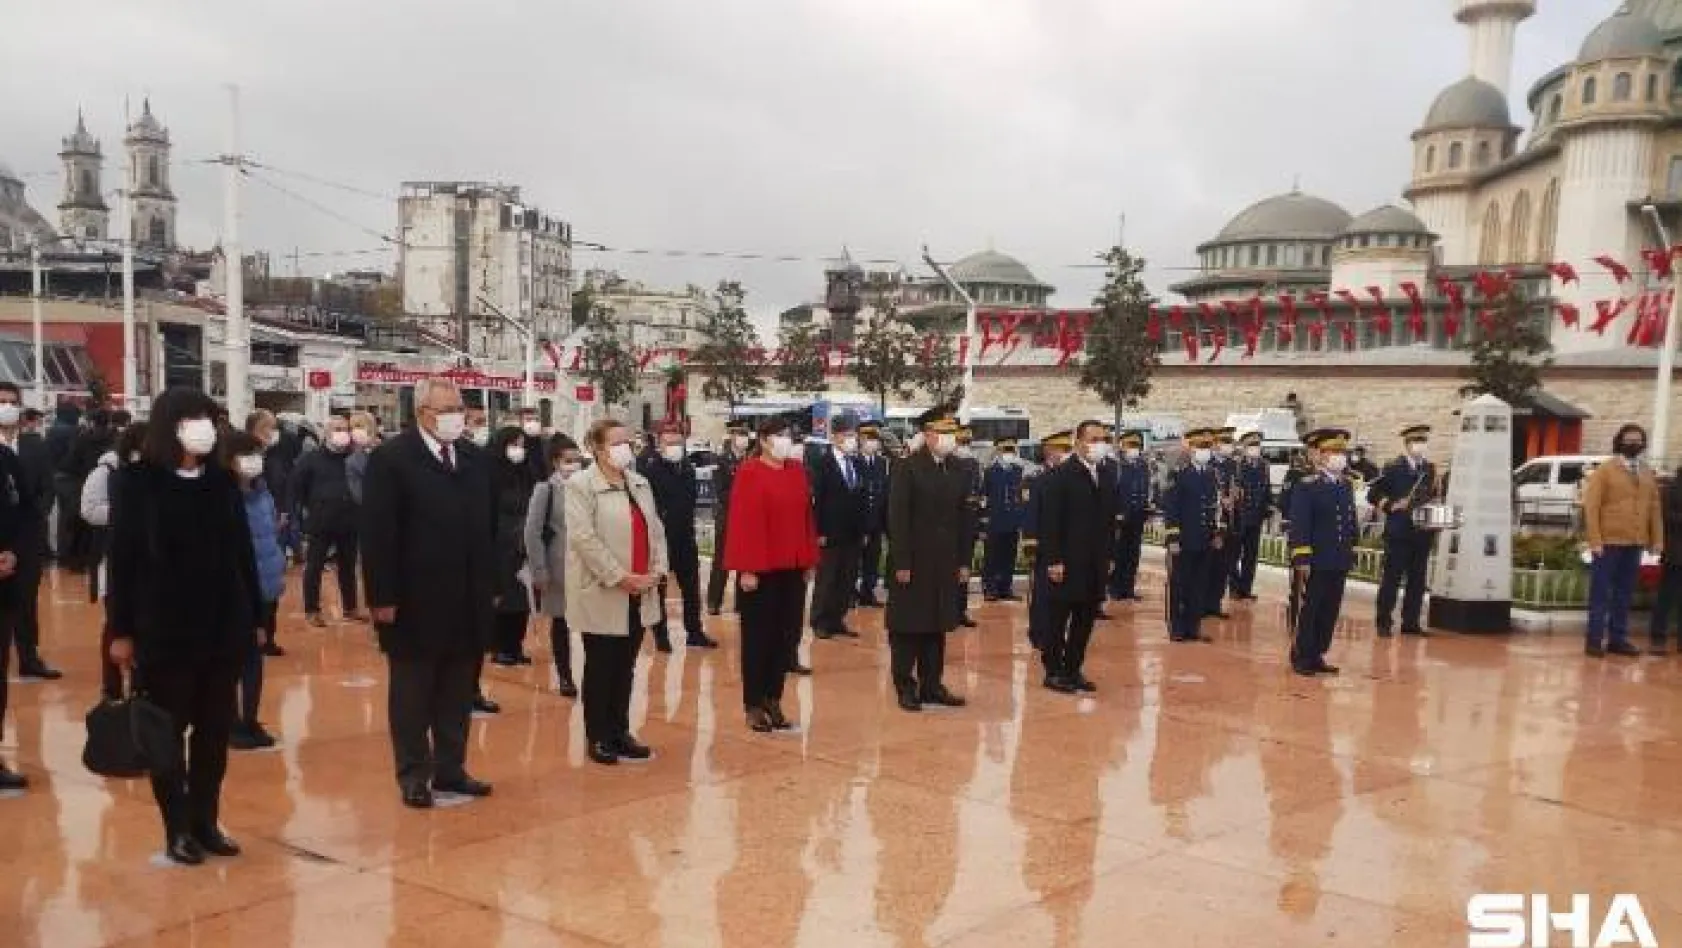 KKTC'nin 37'nci kuruluş yıl dönümünde Taksim'de tören düzenlendi